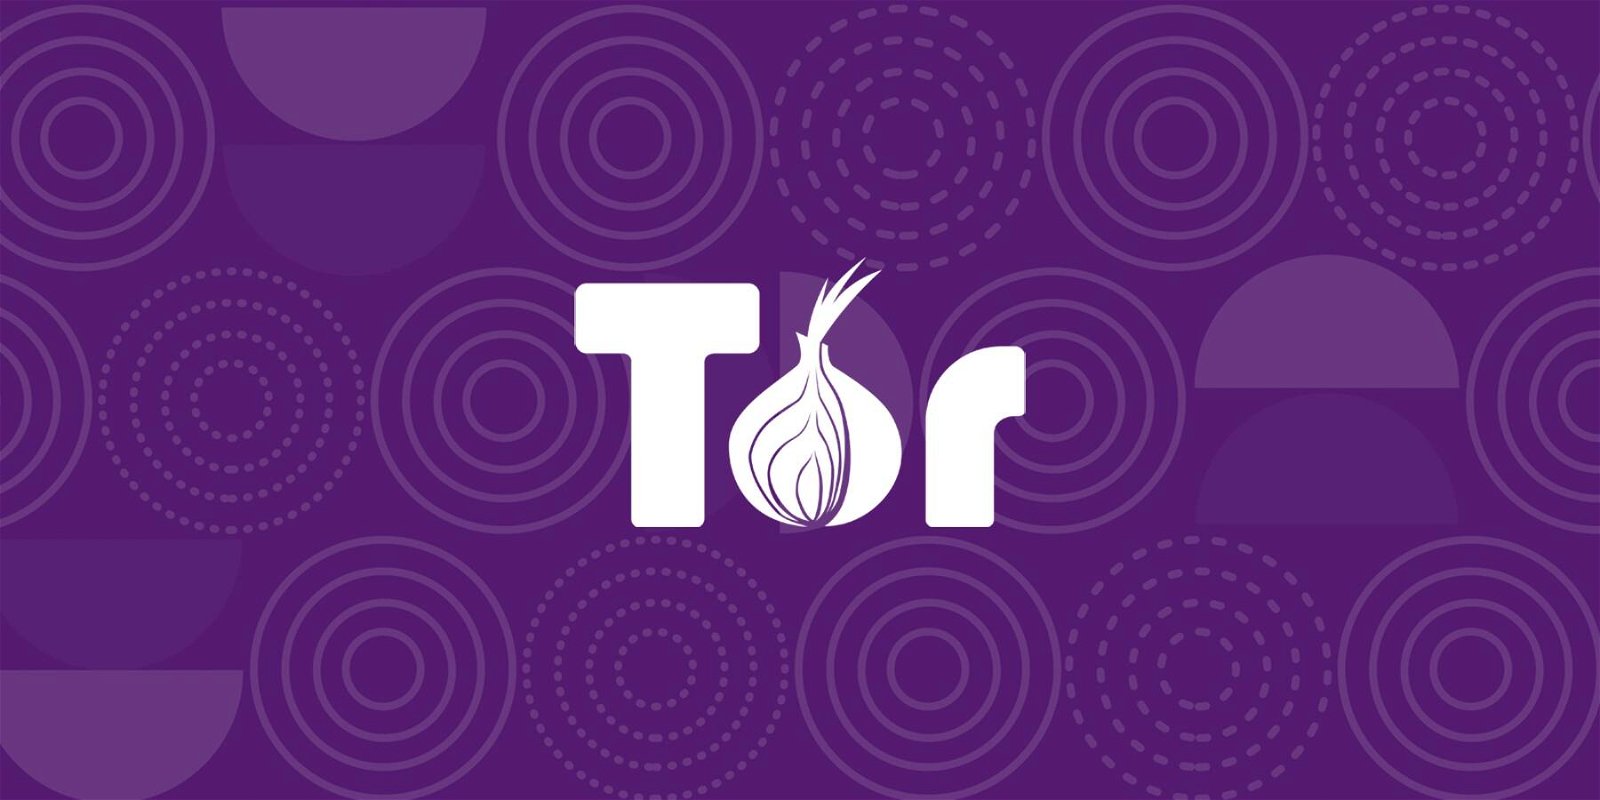 Immagine di Il primo dominio Tor Onion creato è in vendita come NFT